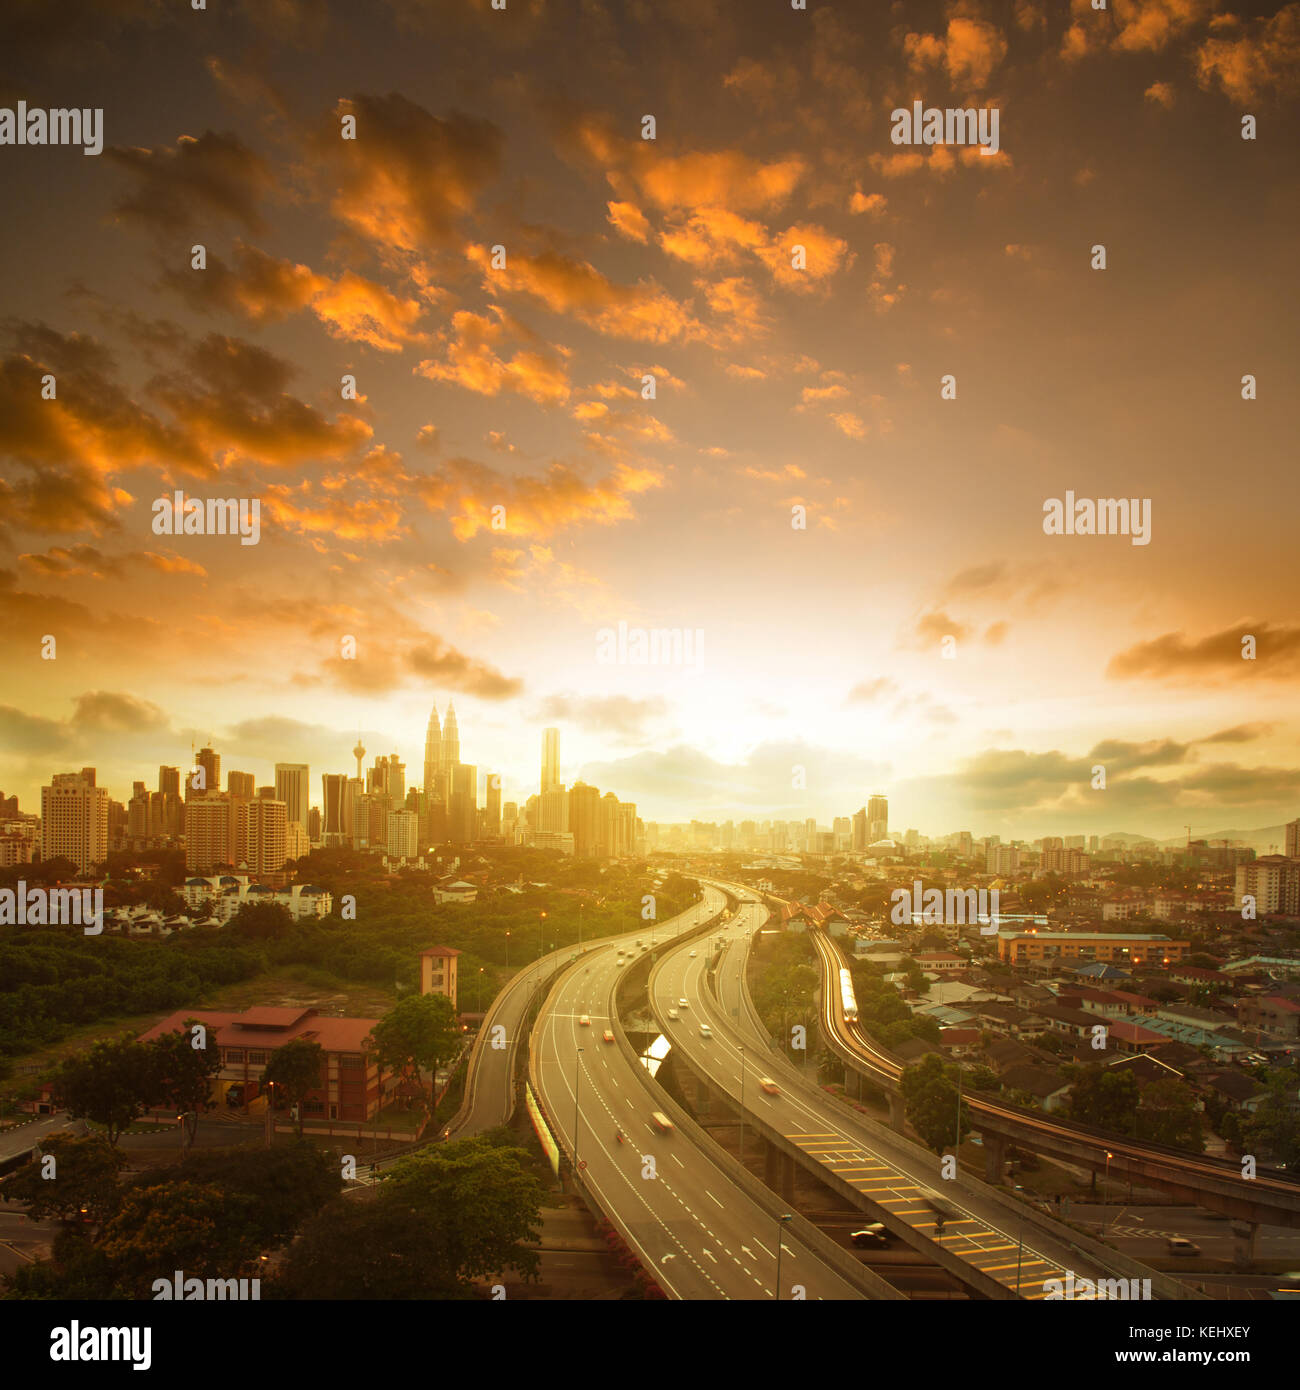 Malaysia capitale scenario paesaggistico. kuala Lumpur skyline vista in vista al tramonto, composizione quadrata. Foto Stock